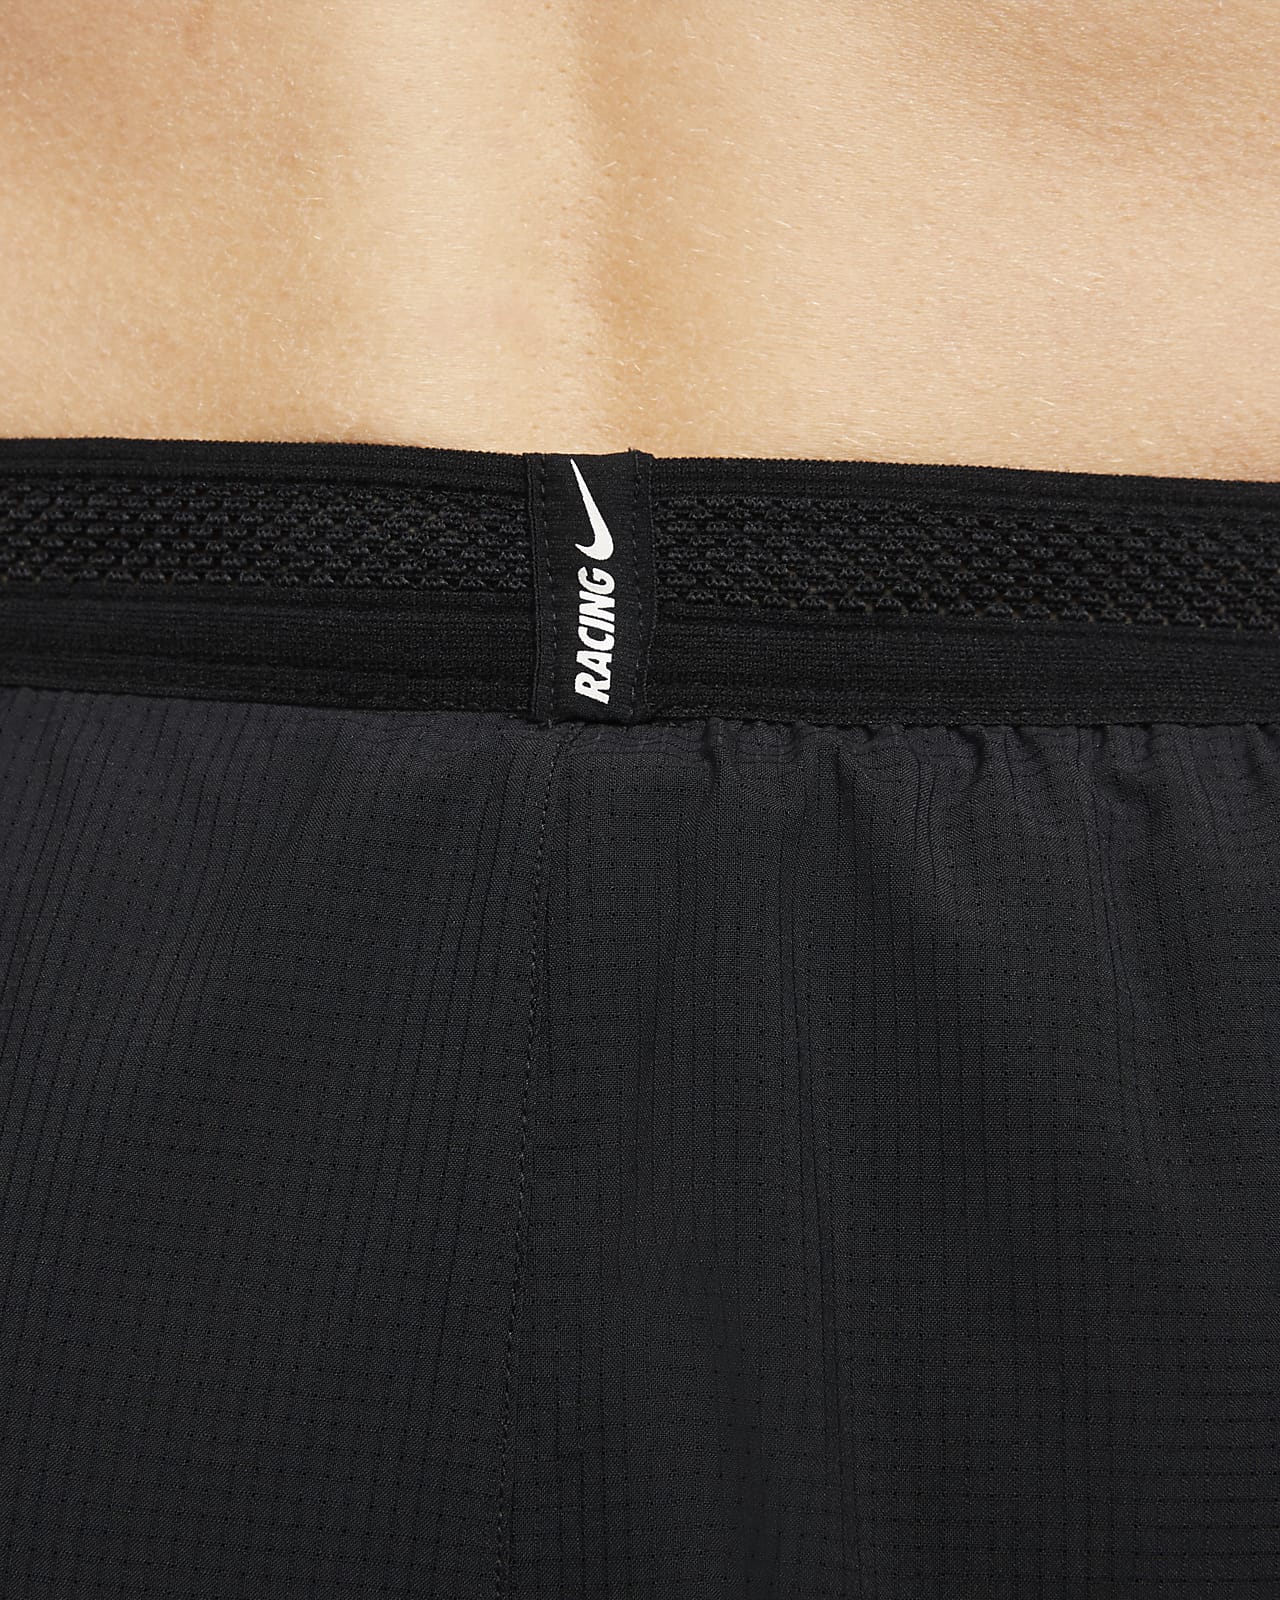 Штаны Nike Dri-Fit Adv Aeroswift Black DM4615-010 купить в Киеве